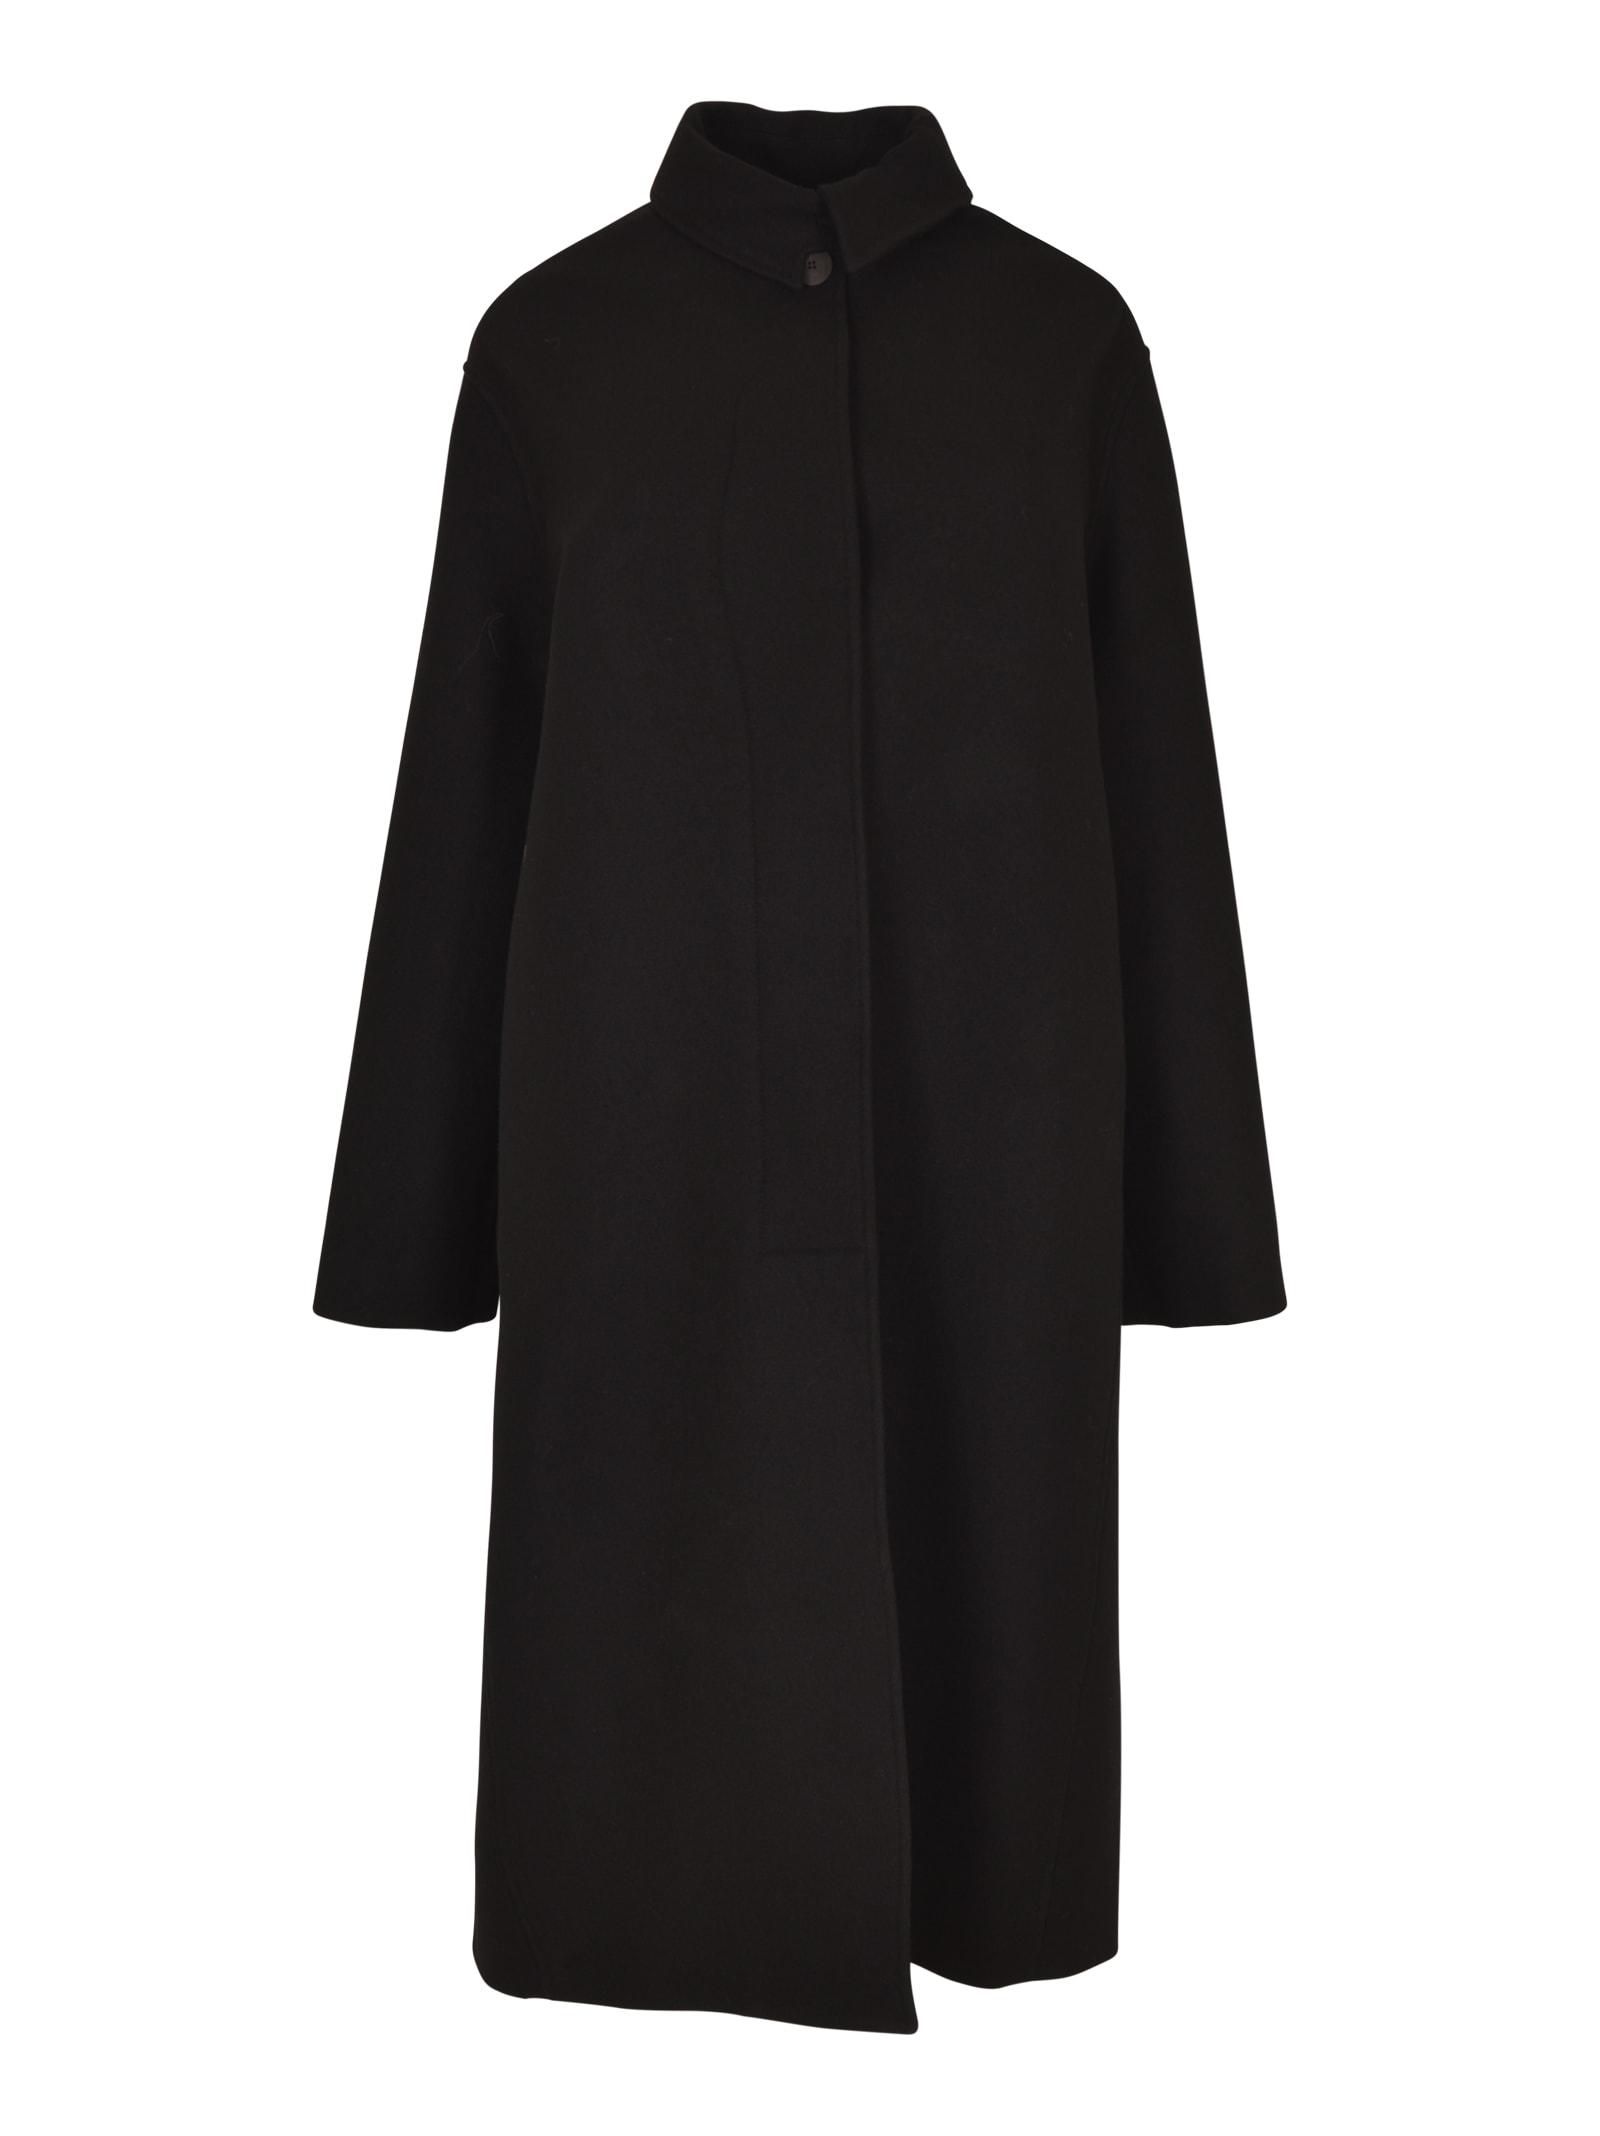 Studio Nicholson Reene Pleat Detail Oversized Coat in Black | Lyst